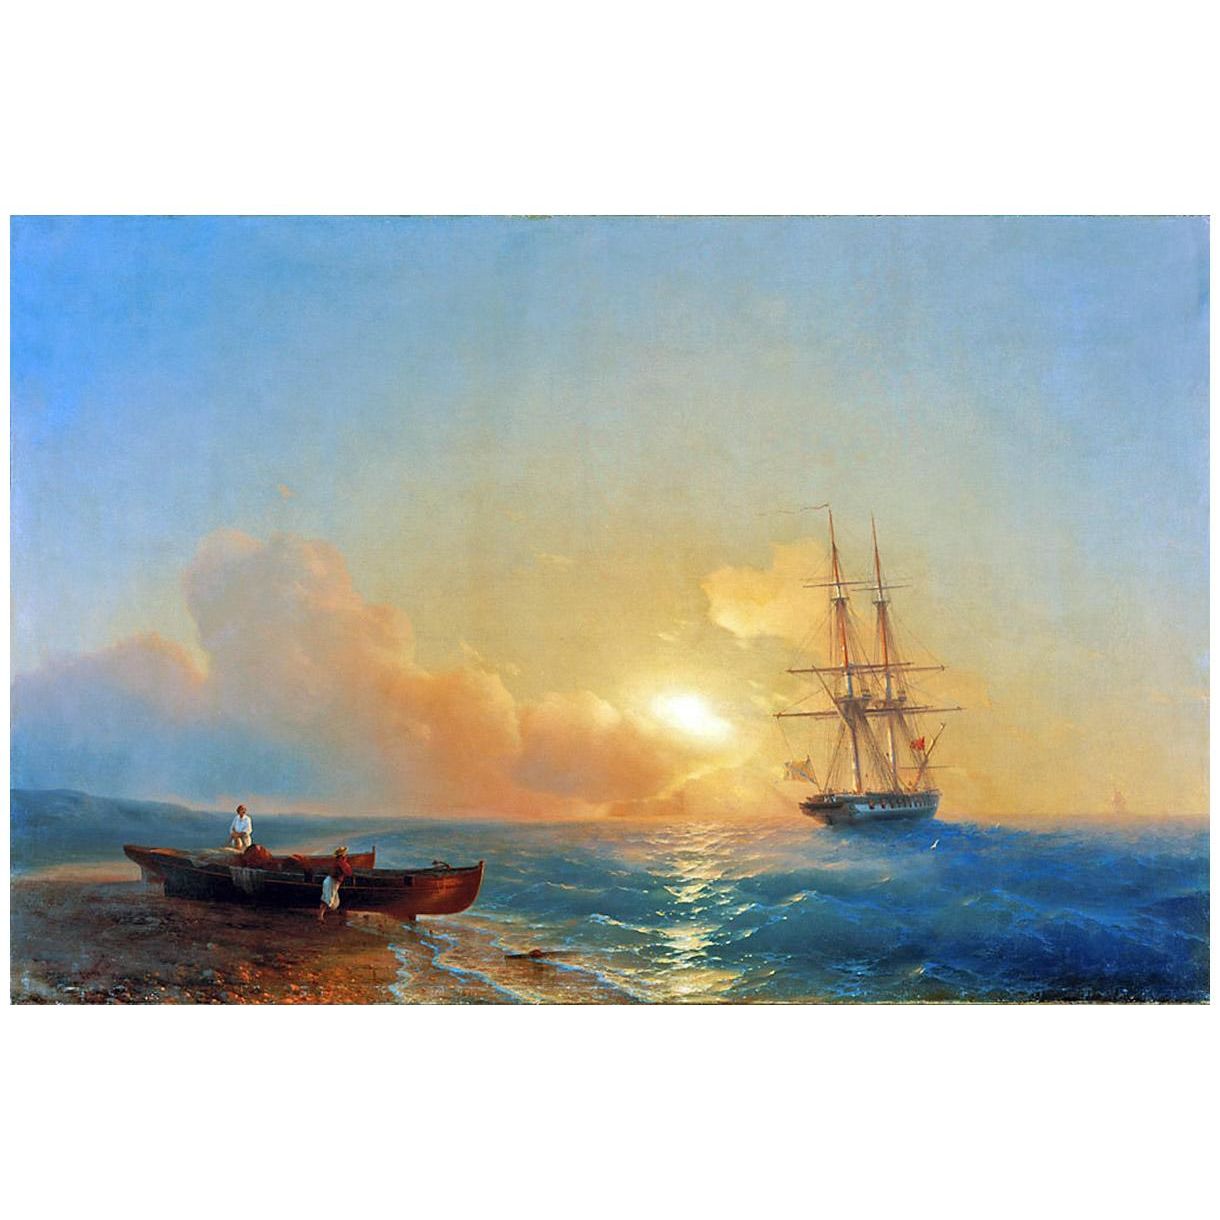 Иван Айвазовский. Рыбаки на берегу моря. 1852. Национальная галерея, Ереван